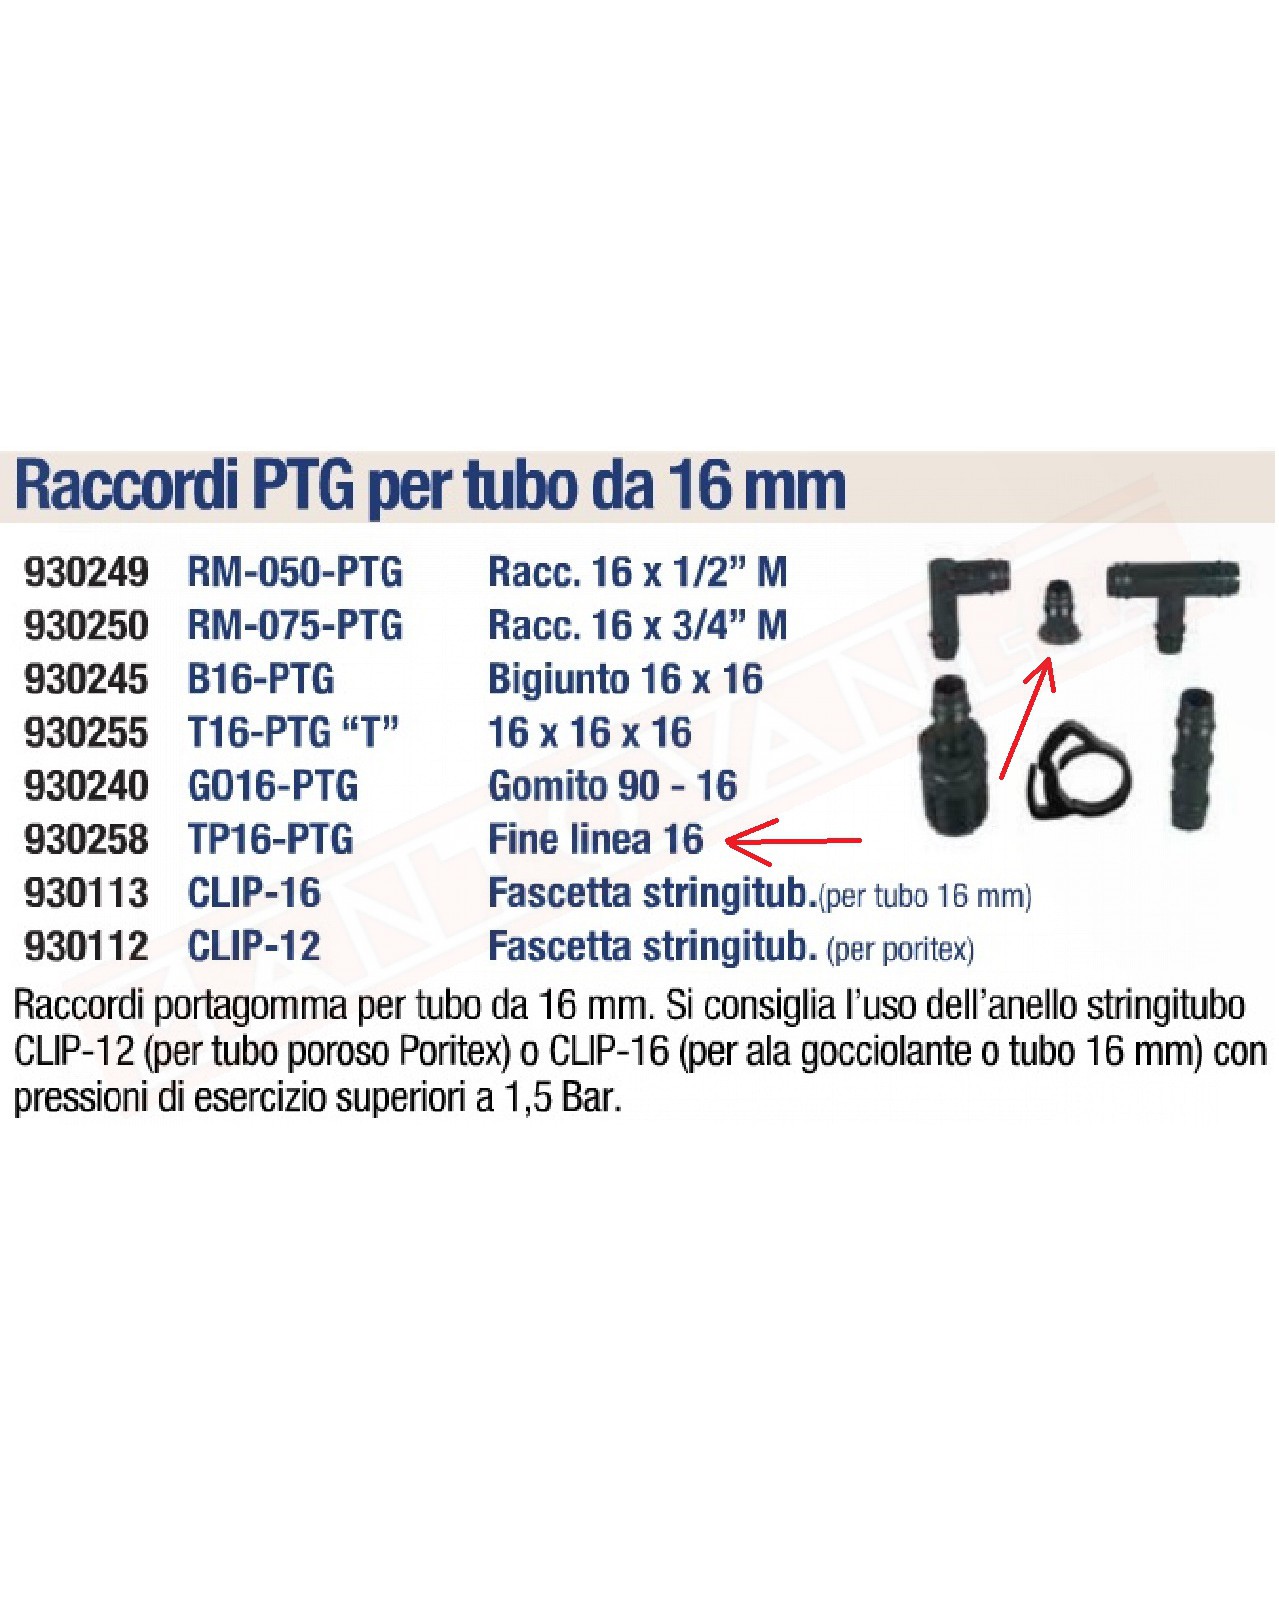 TP16-PTG TAPPO CON PORTAGOMMA PER TUBO 16